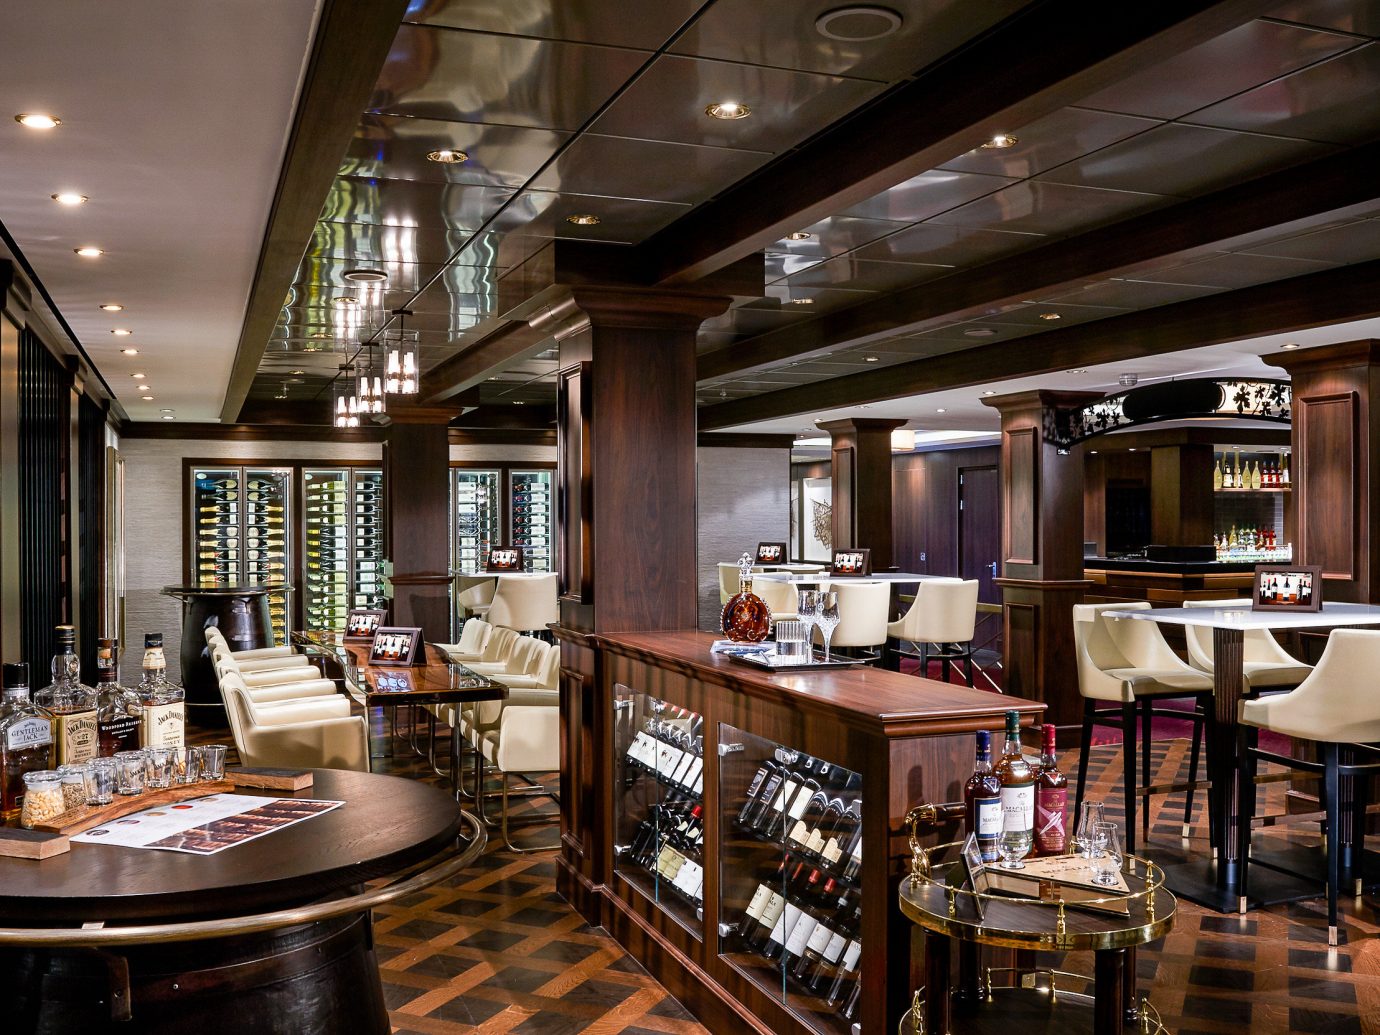 Cruise Travel Luxury Travel Trip Ideas indoor ceiling floor restaurant interior design Bar café pub furniture several